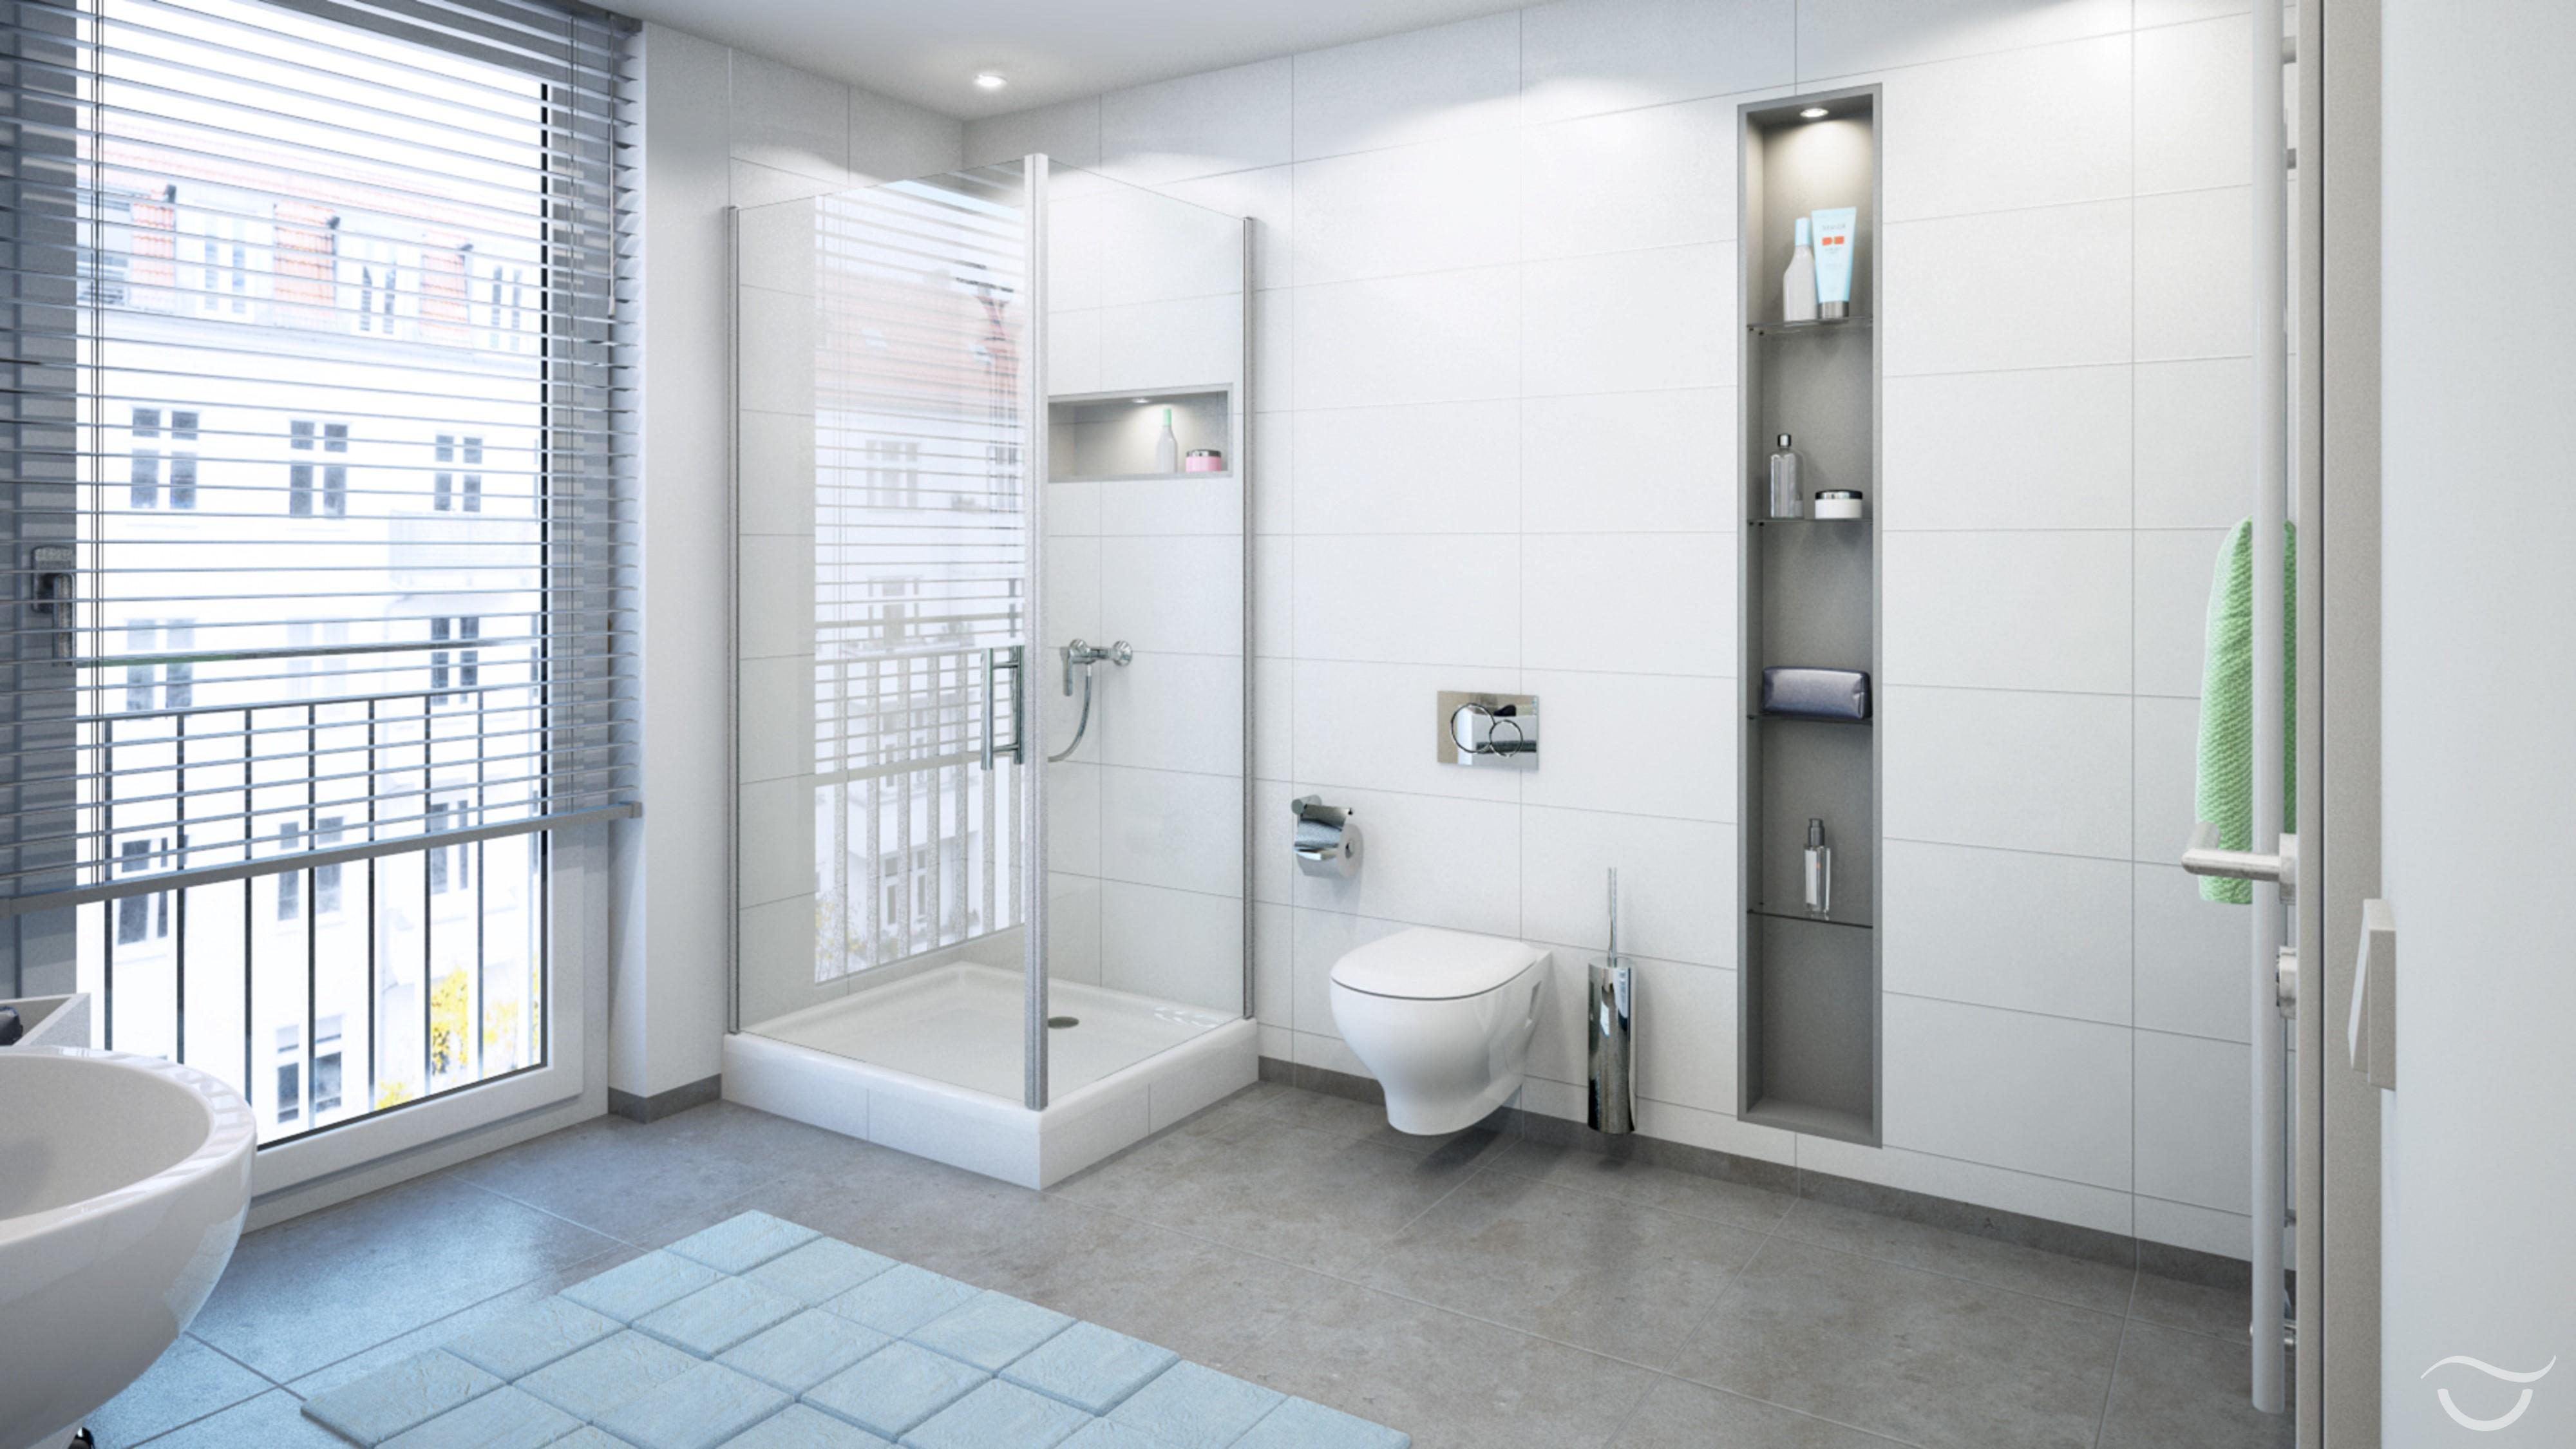 Moderne Dusche im Design Classic Chic #dusche #einbauregal #puristisch ©Banovo GmbH